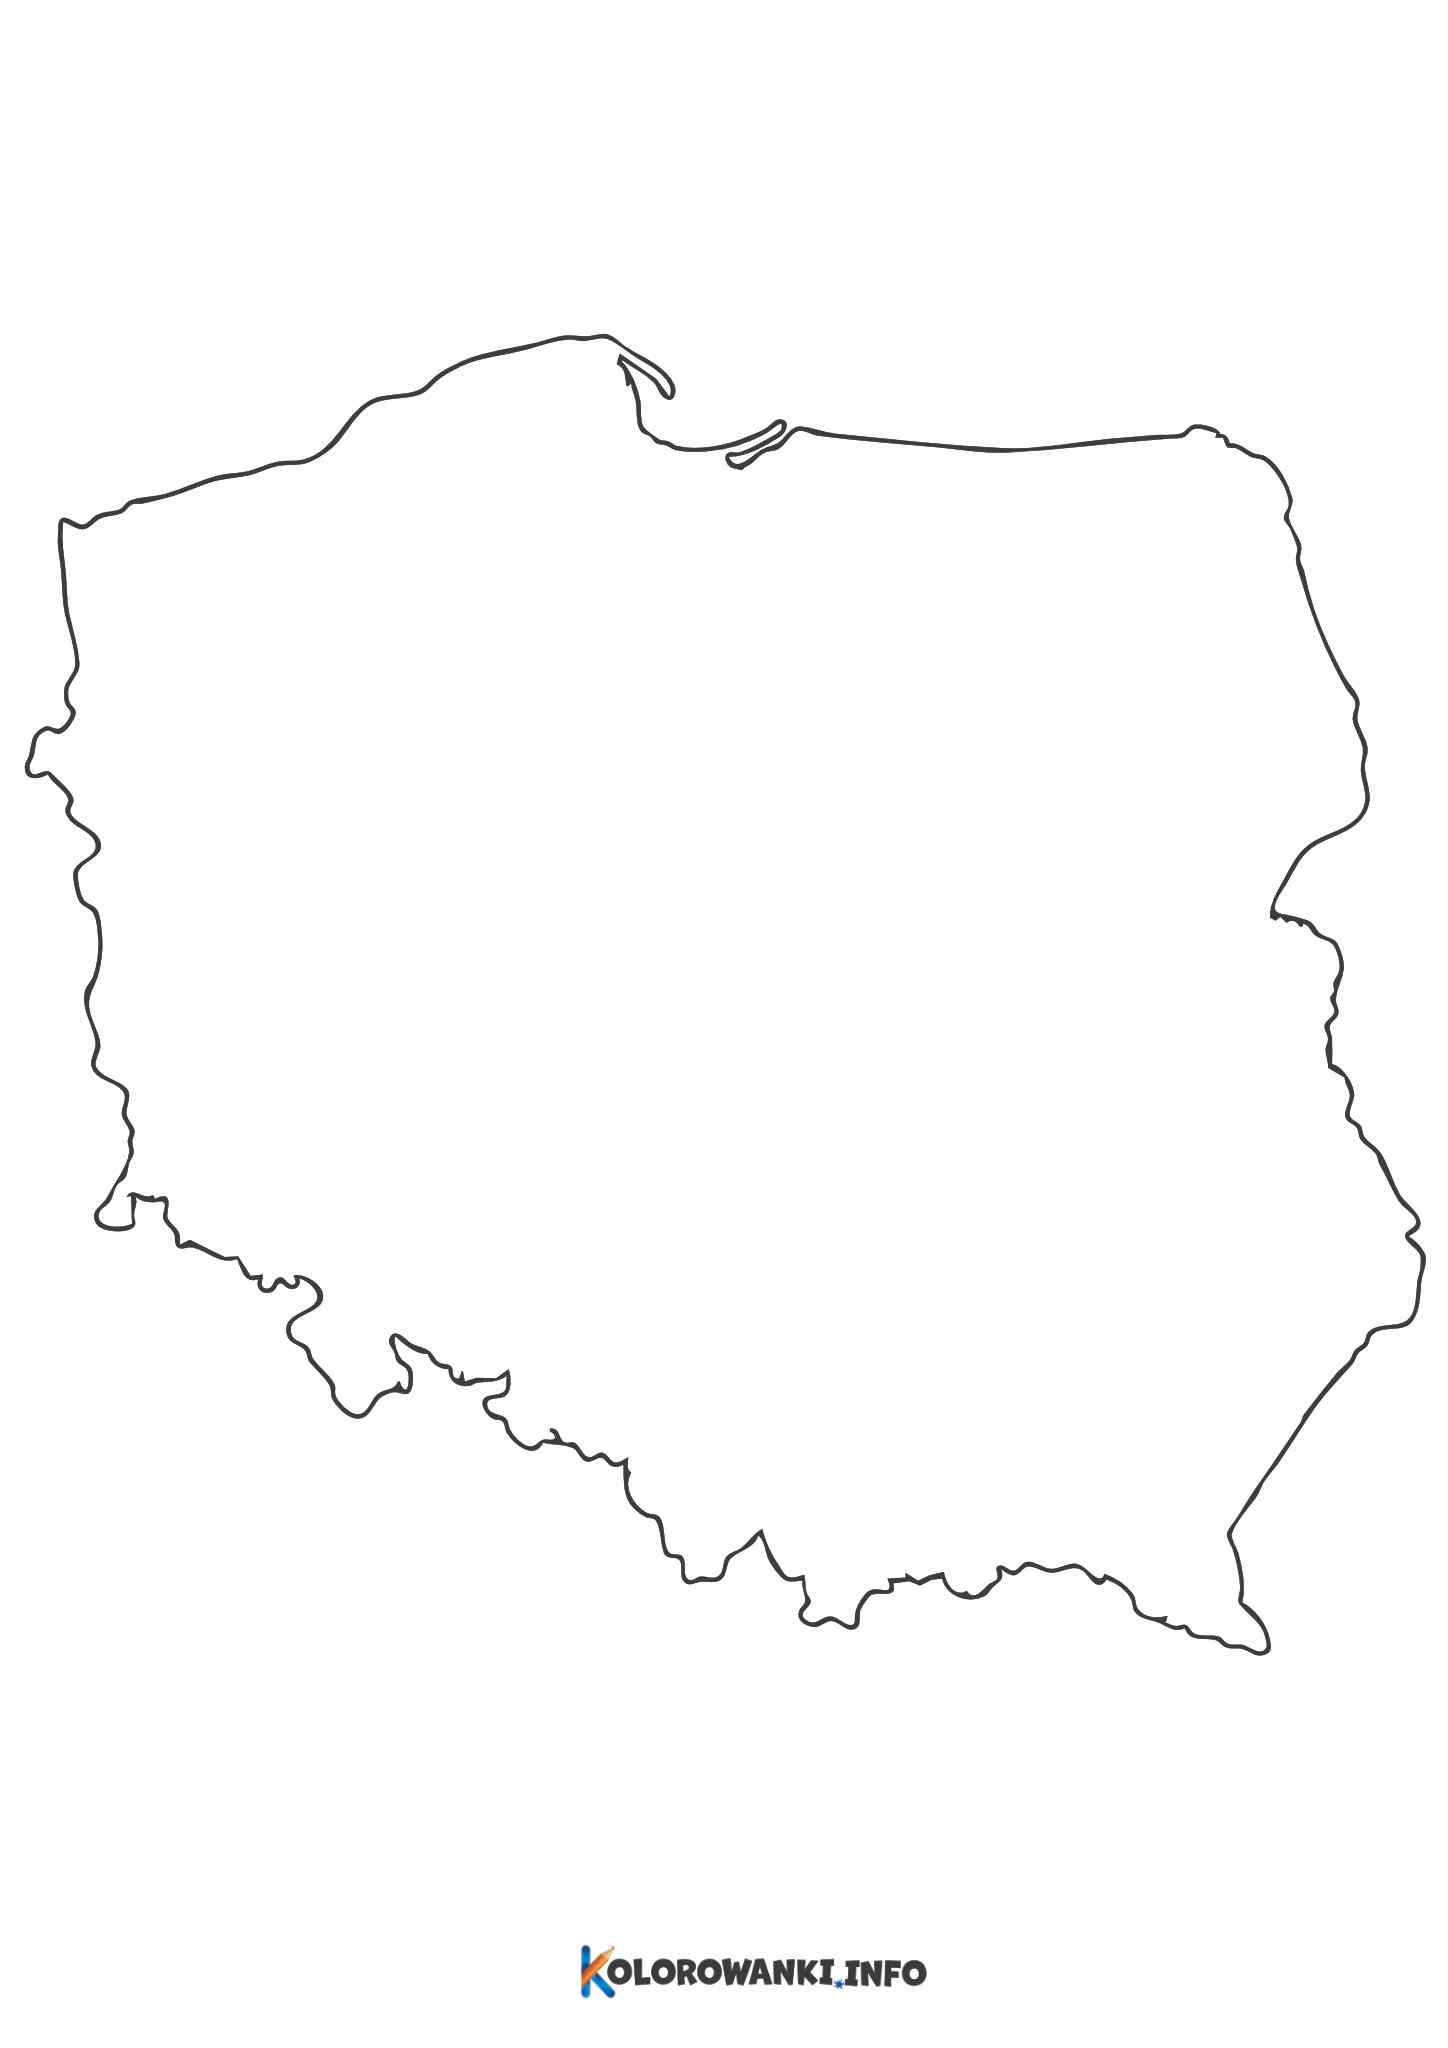 Mapa Polski Do Druku. Kontury, Kolorowanka, Szablon, Województwa ...